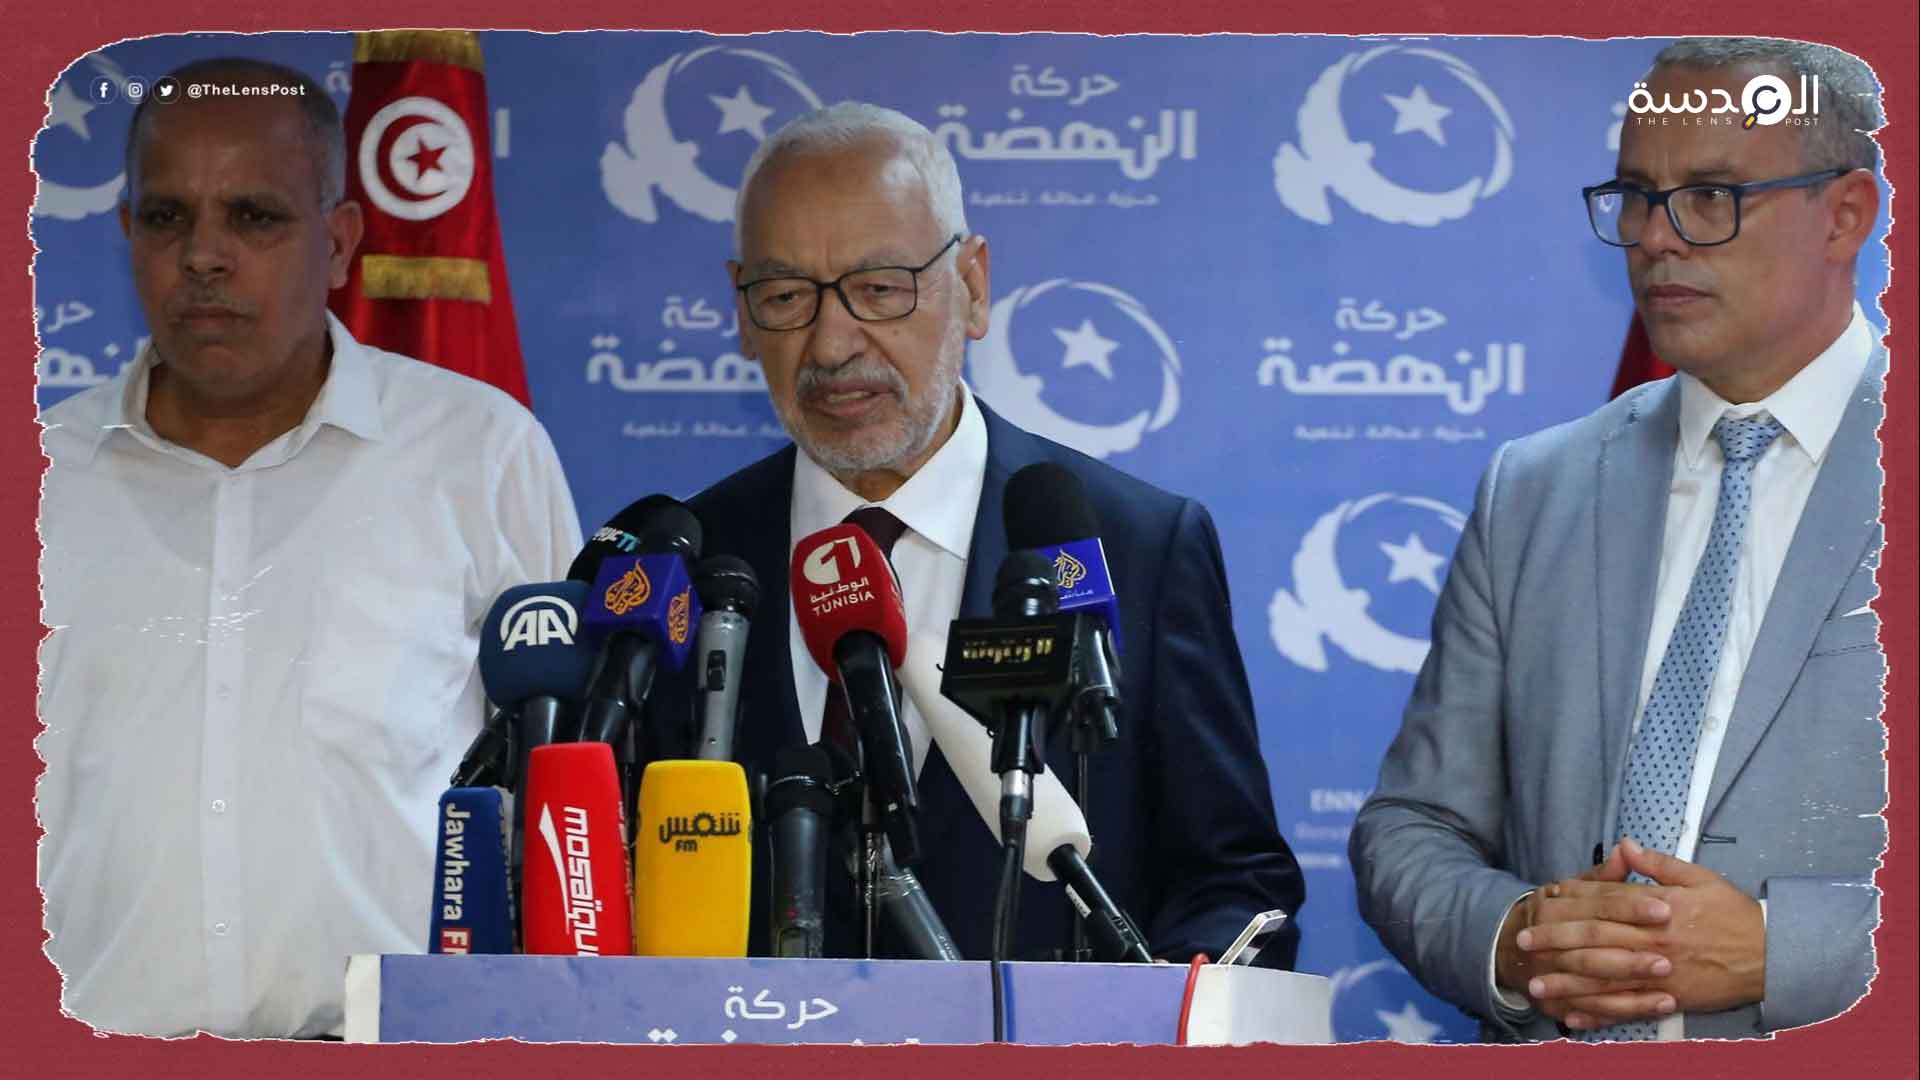 النهضة التونسية: انقلاب قيس سعيد أعاد البلاد للوراء